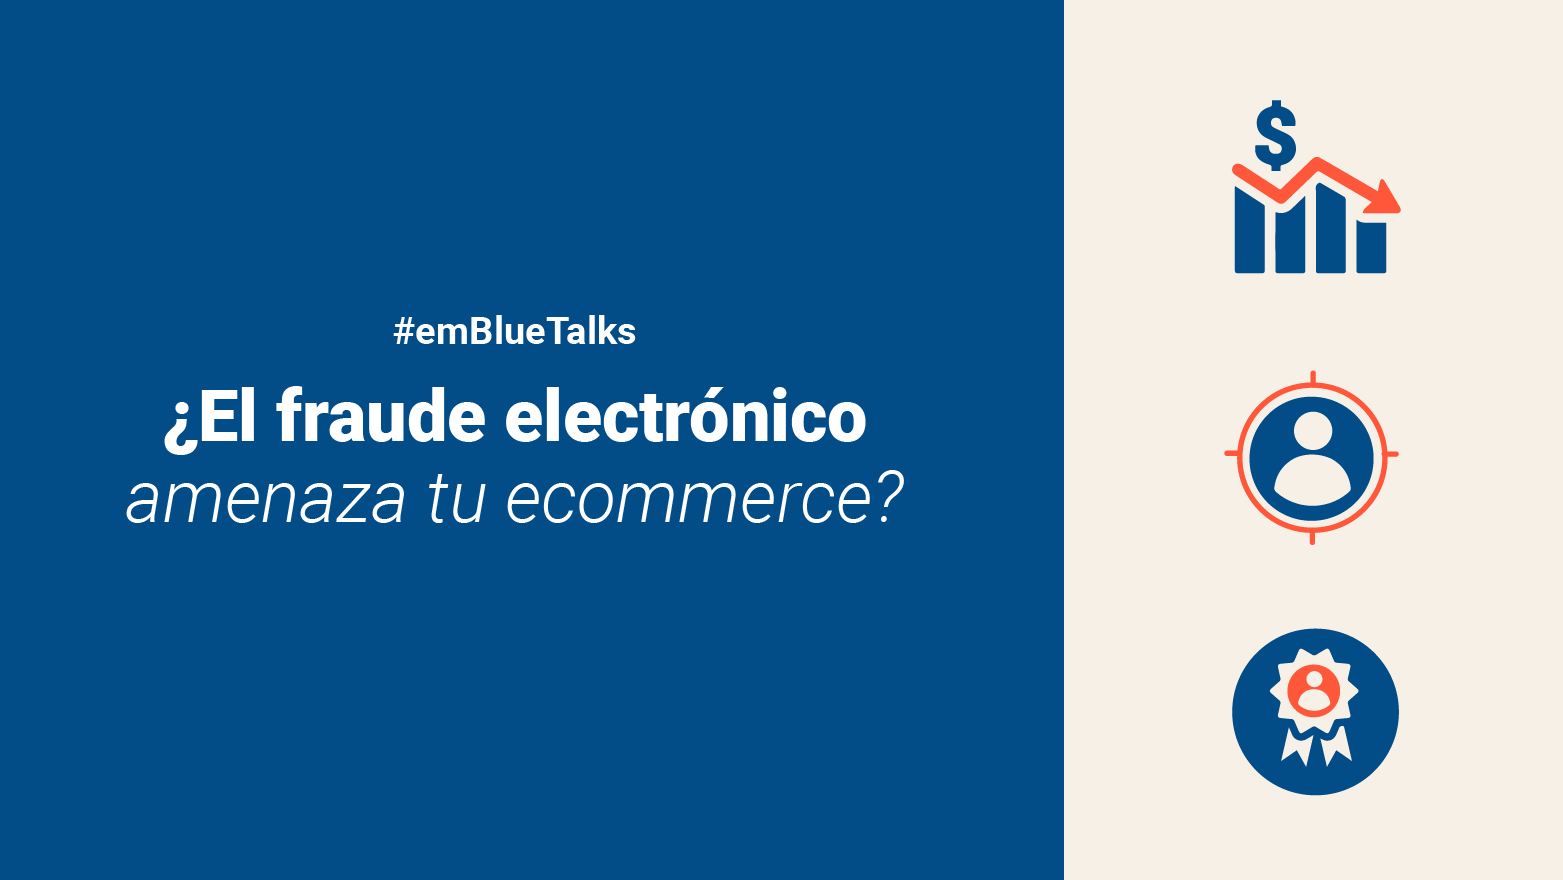 #emBlueTalks protege tu negocio del fraude electrónico